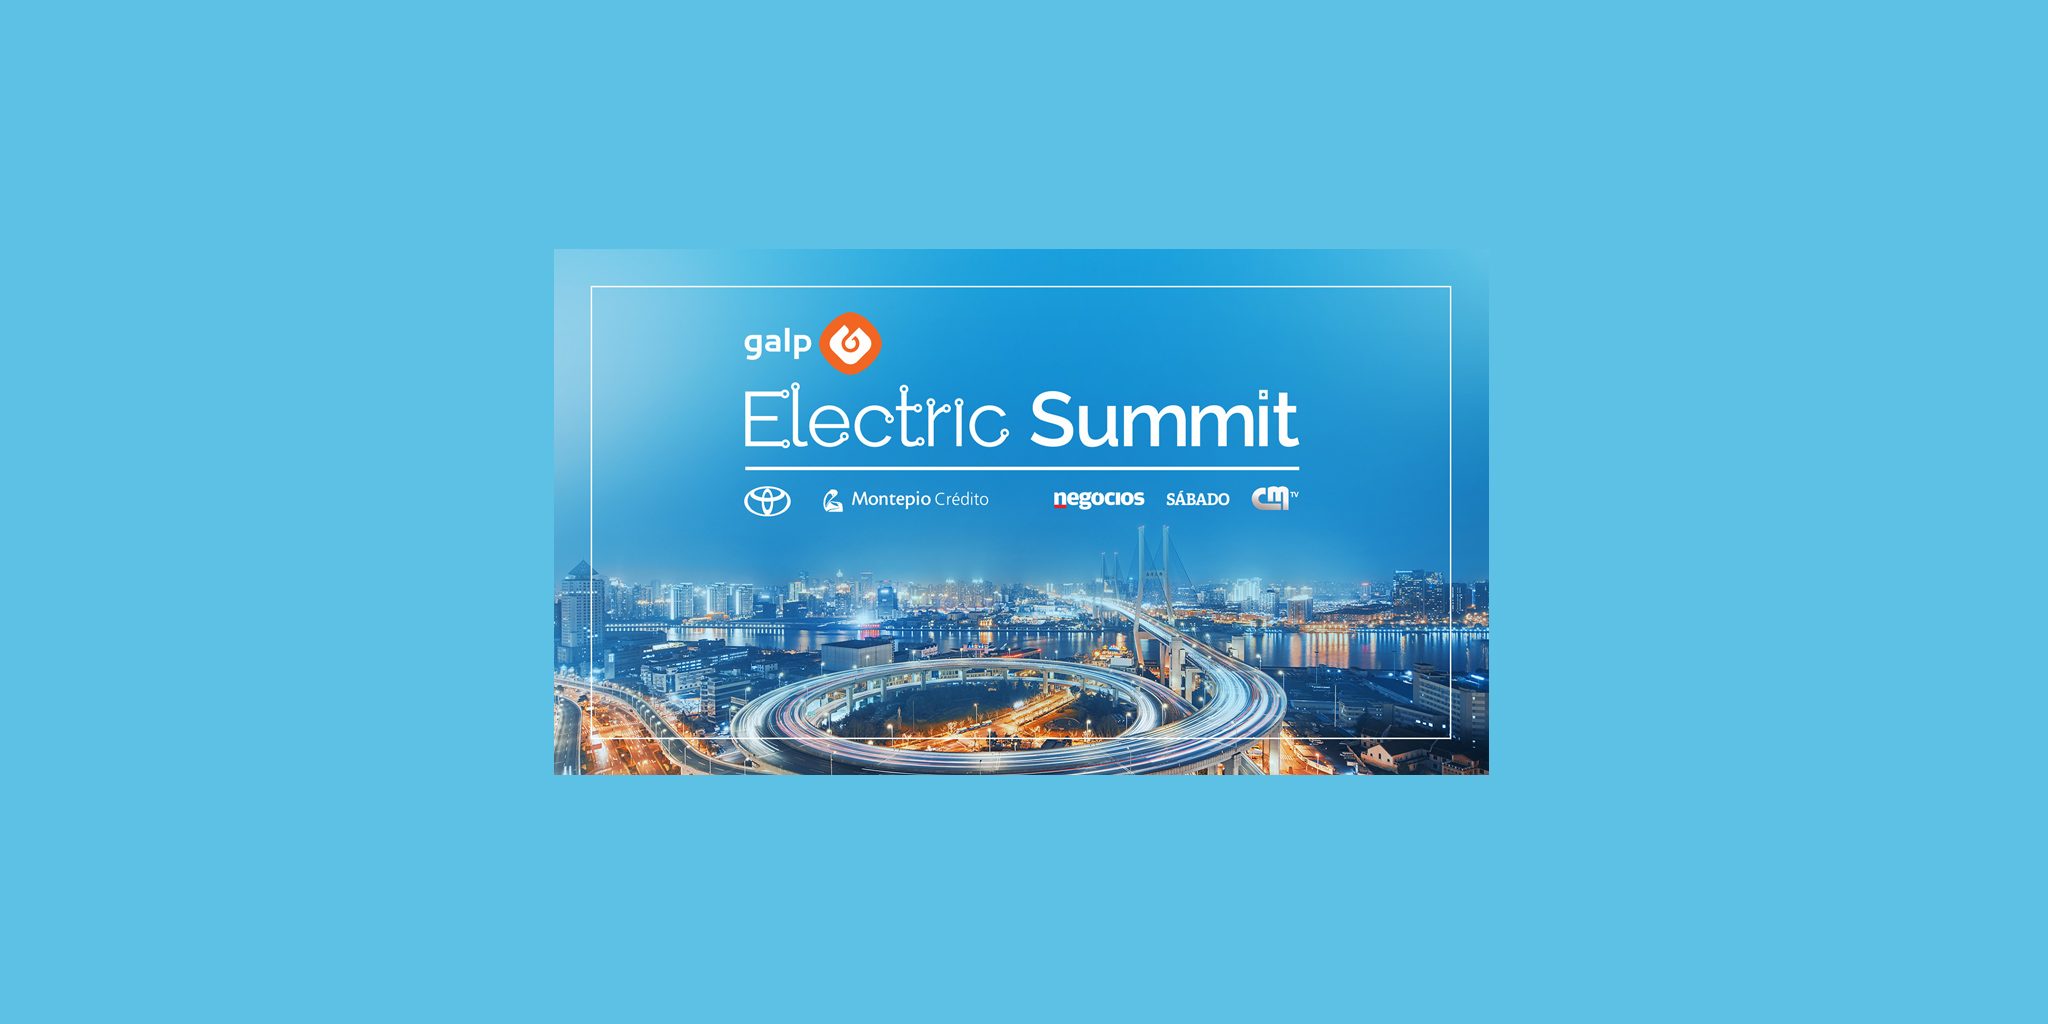 galp-electric-summit-a-maior-iniciativa-sobre-energia-em-portugal